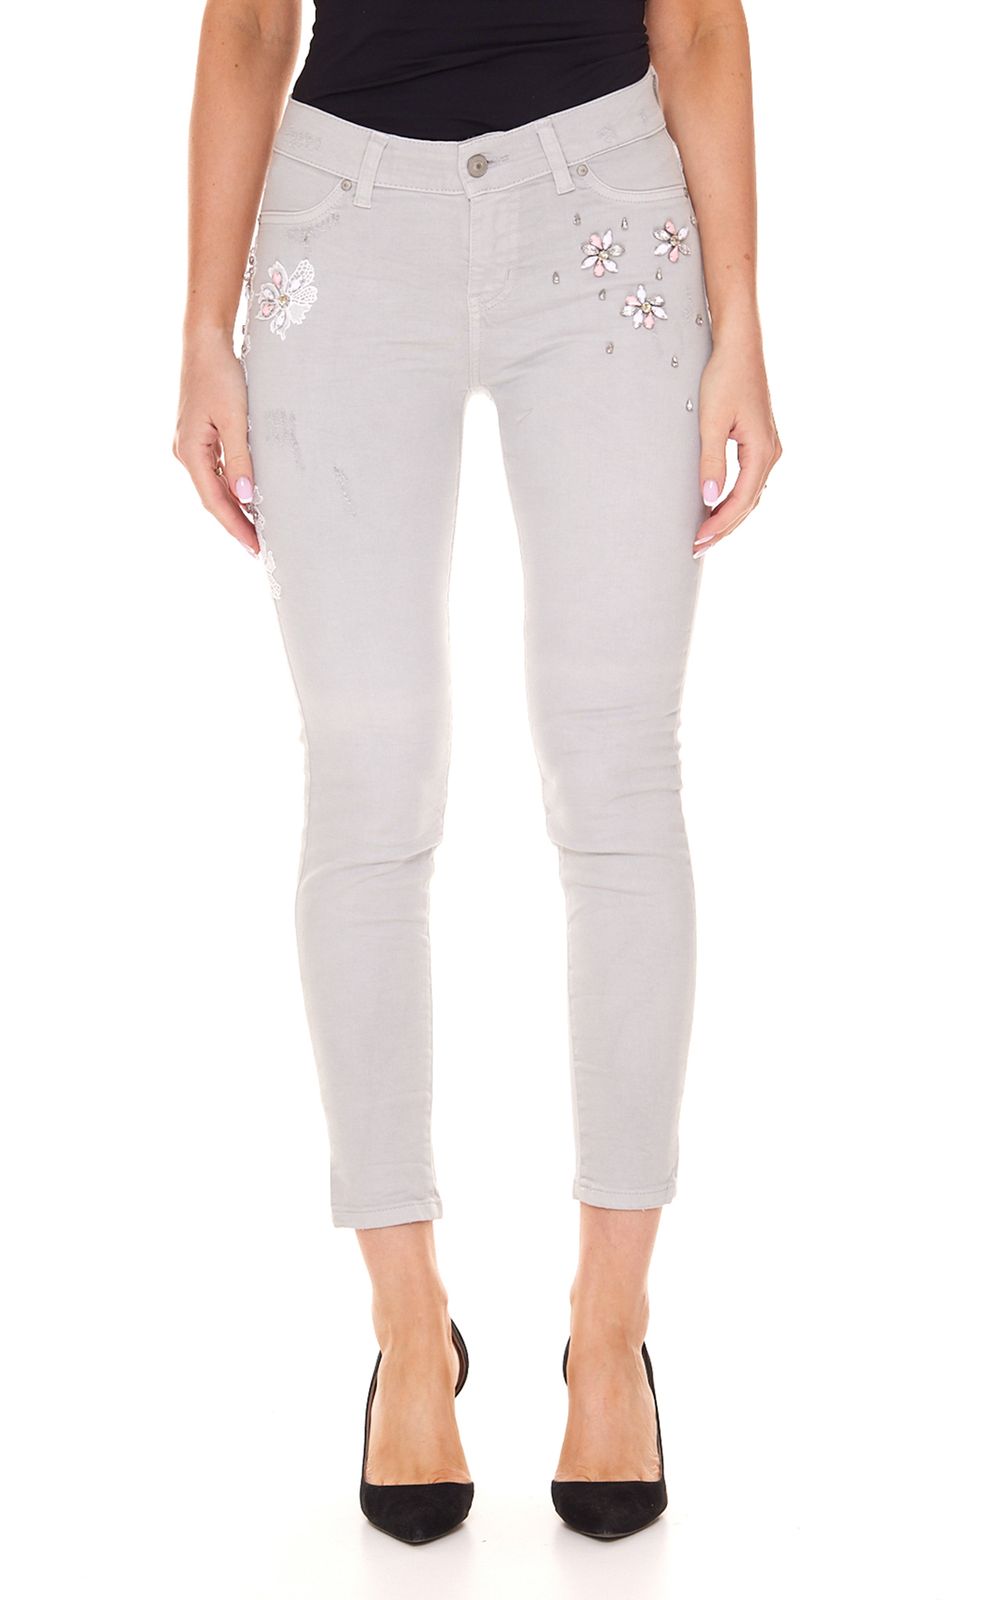 LTB Lonia Damen Super Skinny Jeans mit floralen Stickereien und Ziersteinchen Mid Rise Hose 51032 13833 50891 Grau von LTB